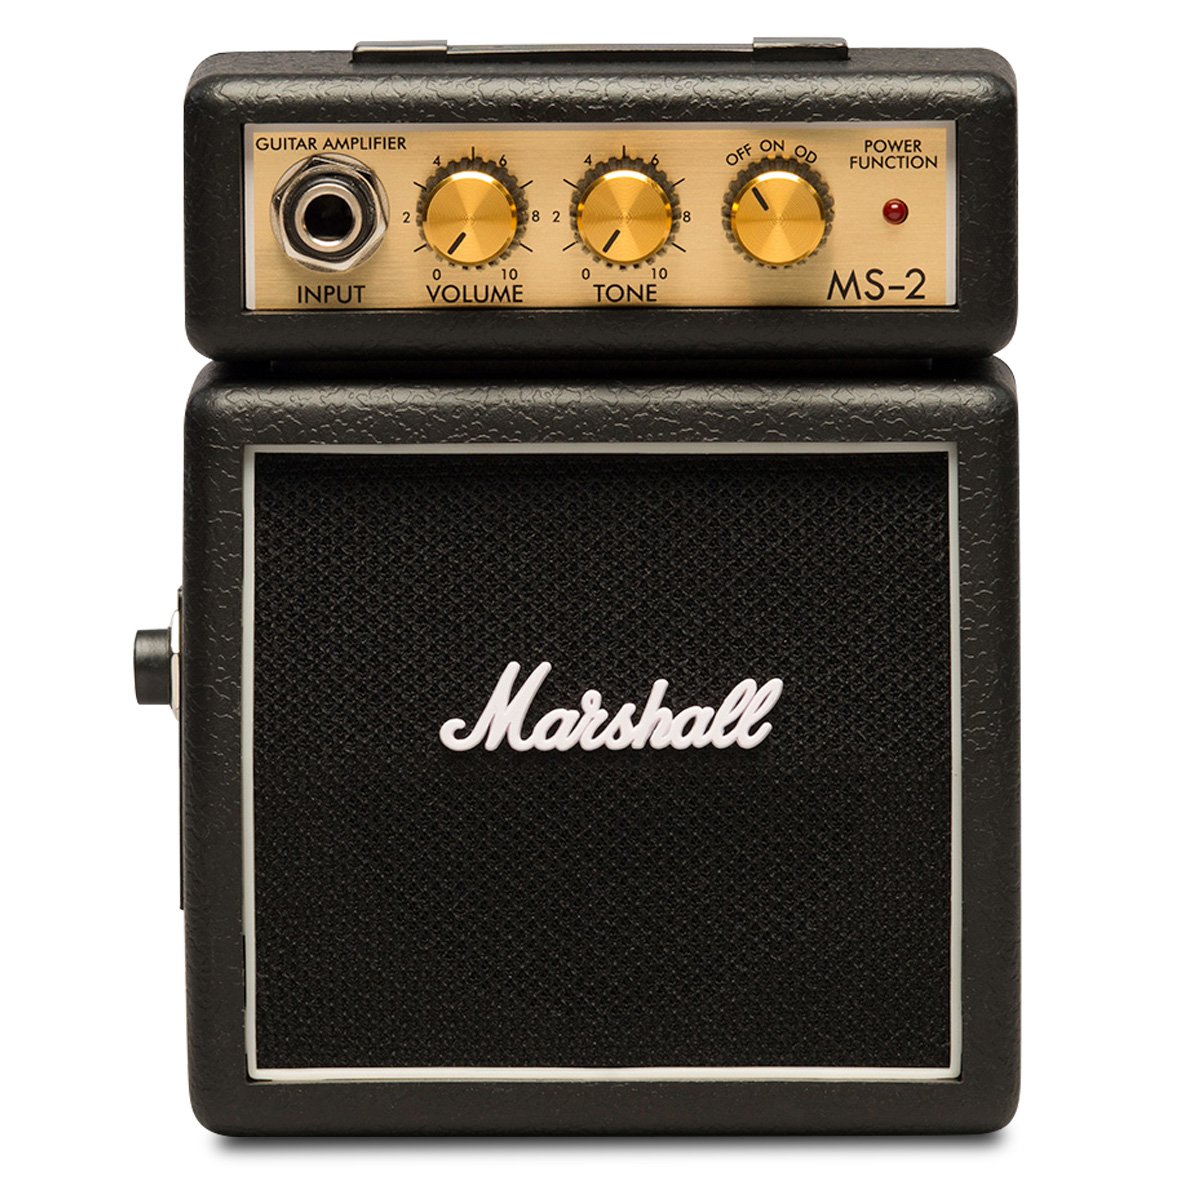 Mini ampli guitare Marshall MS-2 – Cadeaux pour Musiciens